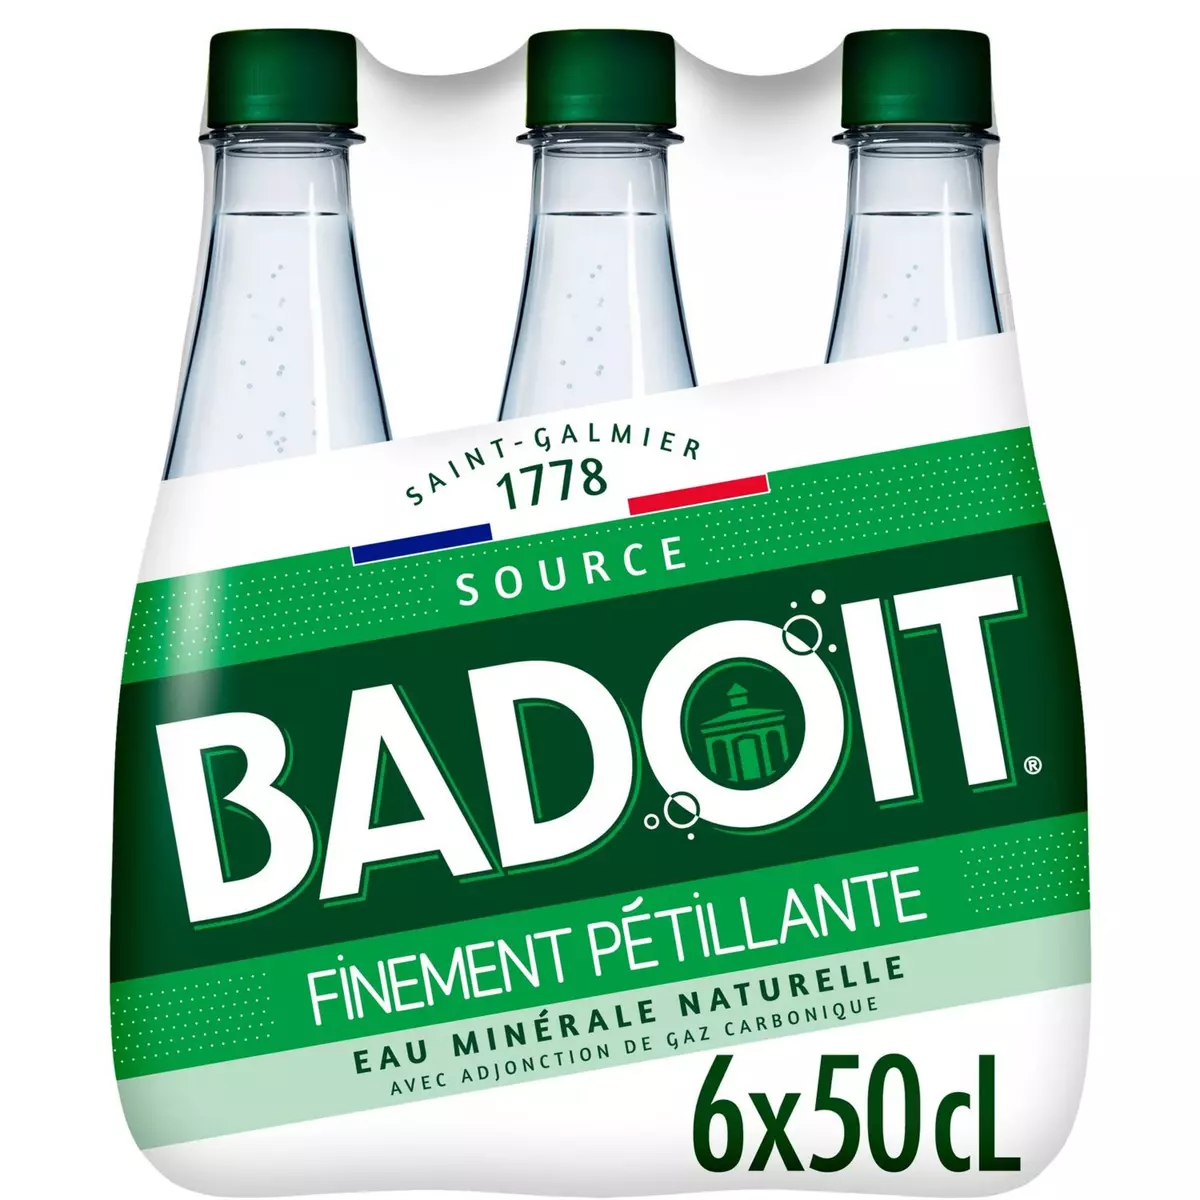 BADOIT Eau gazeuse minérale verte finement pétillante bouteilles 6x50c 6x50cl